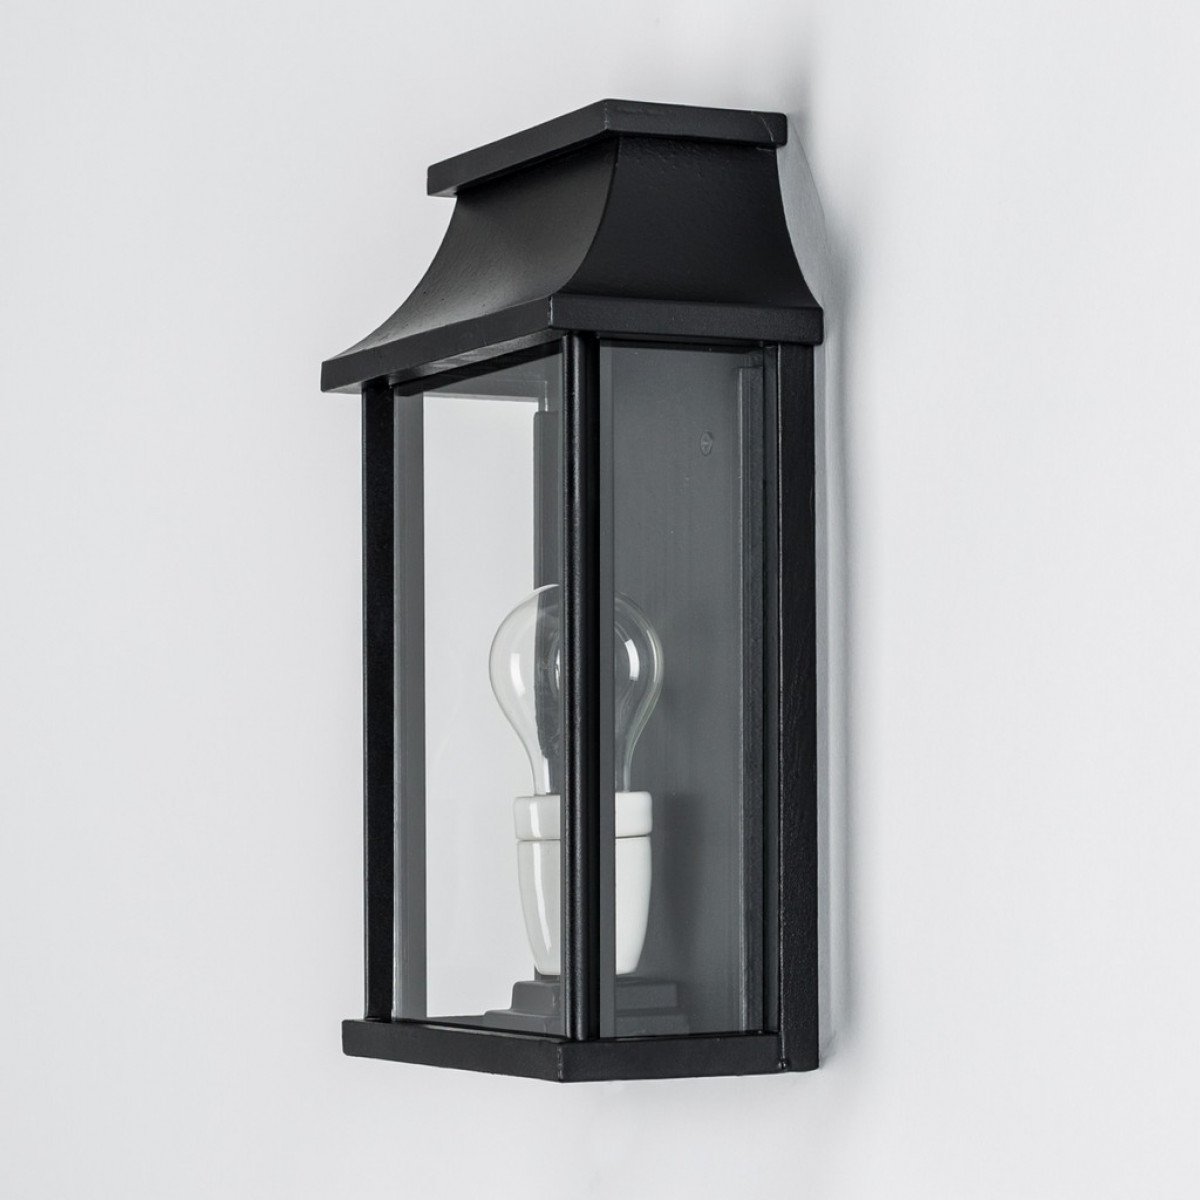 zwarte buitenlamp met vlakke achterzijde, stijlvol klassiek vormgegeven hoogwaardige kwaliteit met de handgemaakte wandlamp